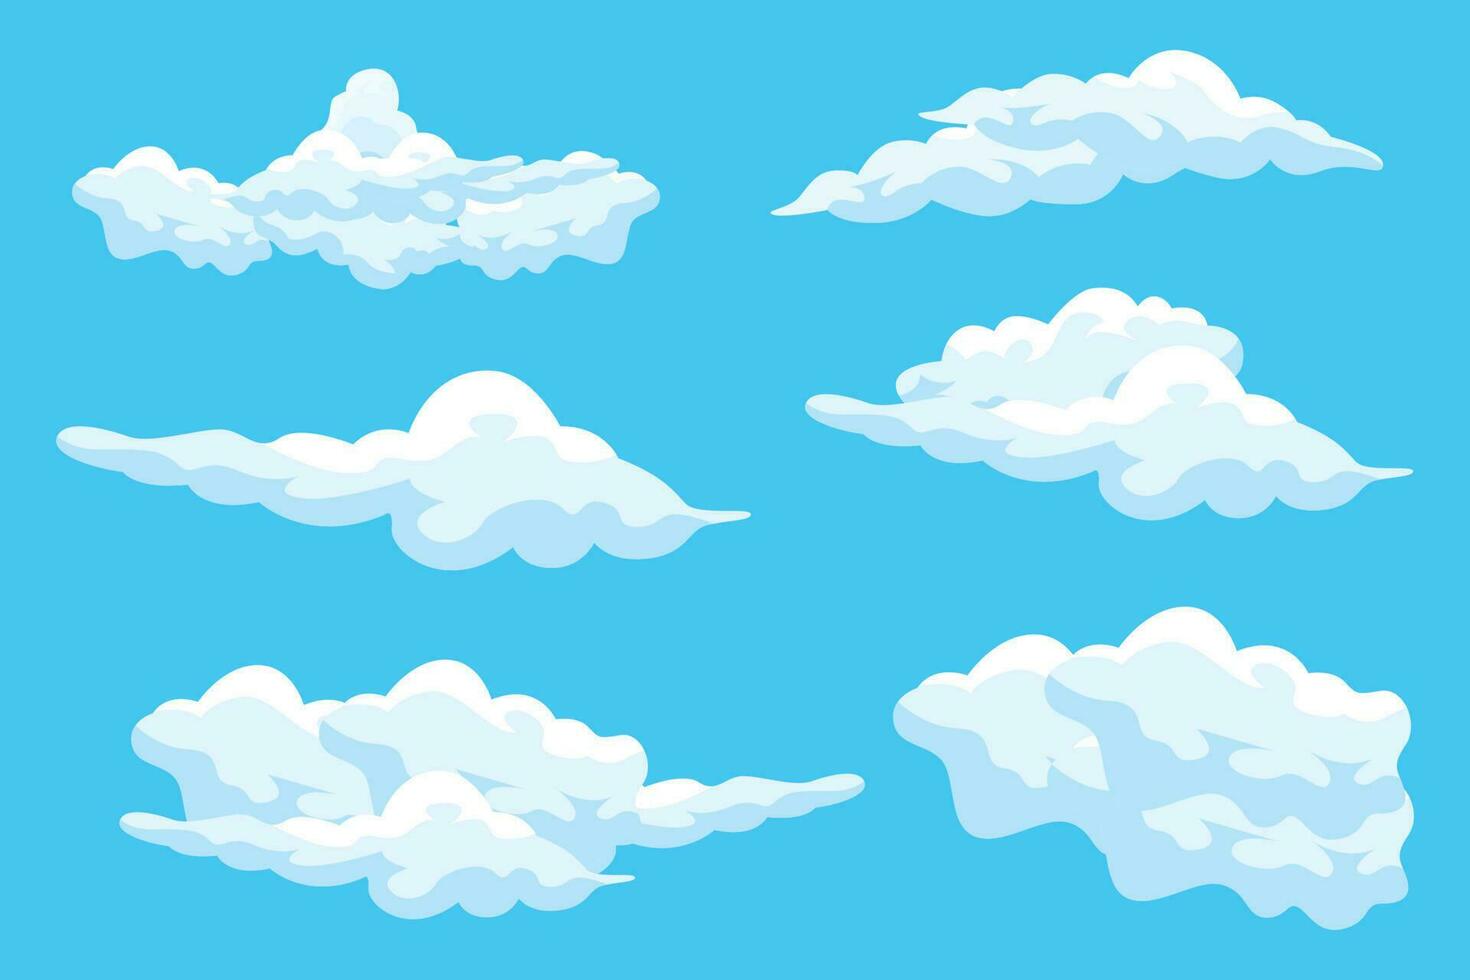 conception de fond de nuage, illustration de paysage de ciel, vecteur de décoration, bannières et affiches